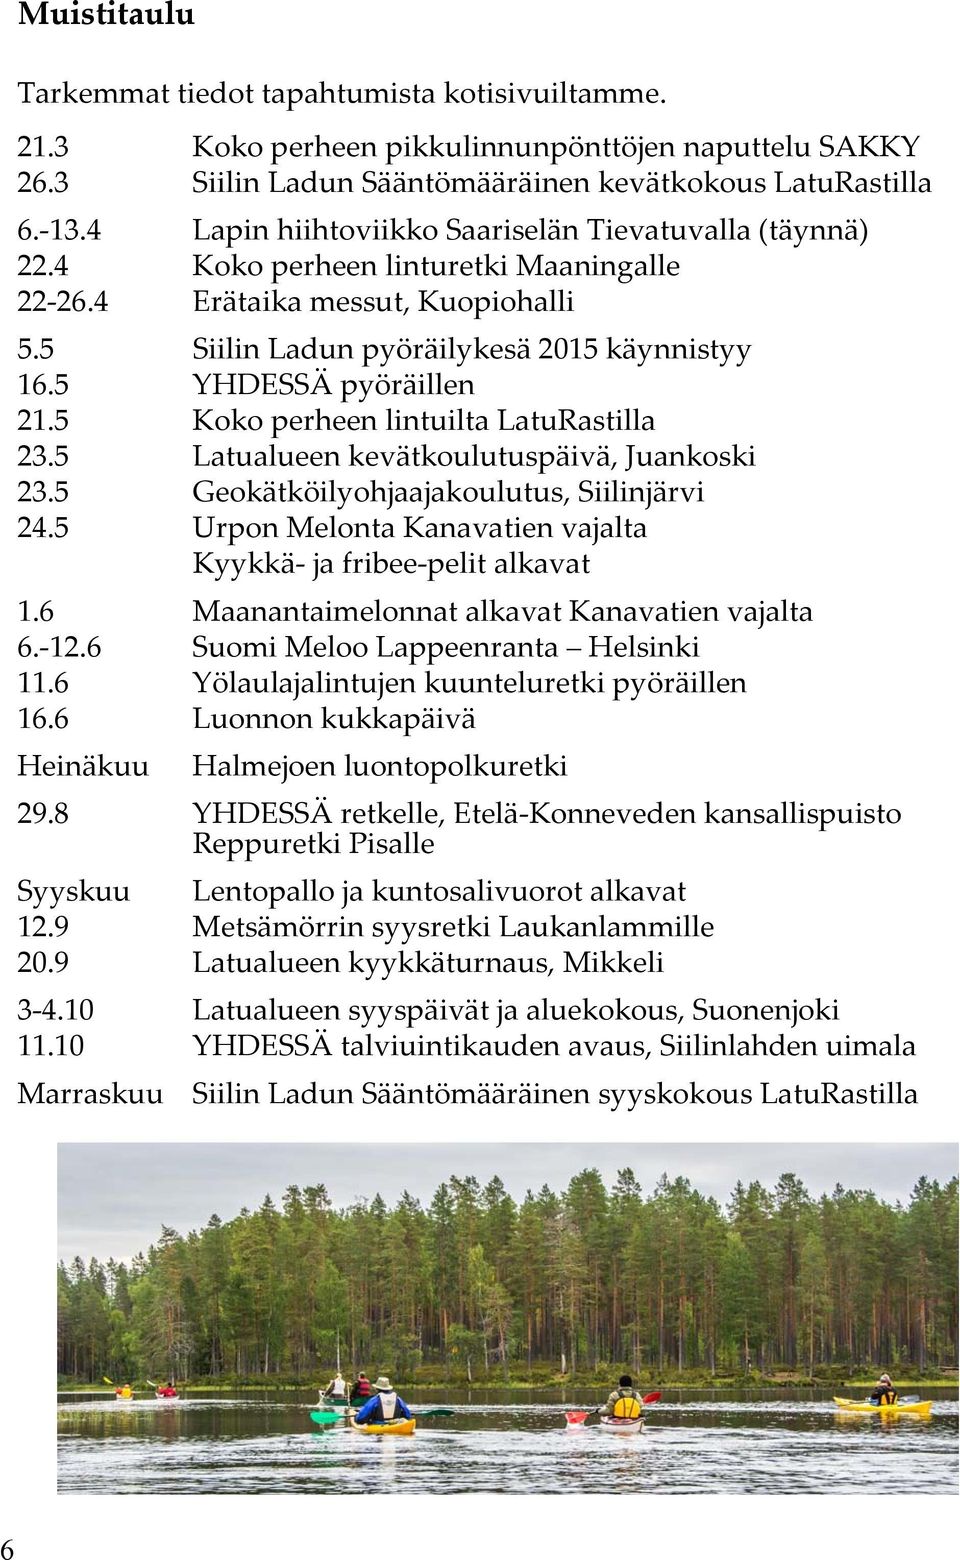 5 YHDESSÄ pyöräillen 21.5 Koko perheen lintuilta LatuRastilla 23.5 Latualueen kevätkoulutuspäivä, Juankoski 23.5 Geokätköilyohjaajakoulutus, Siilinjärvi 24.